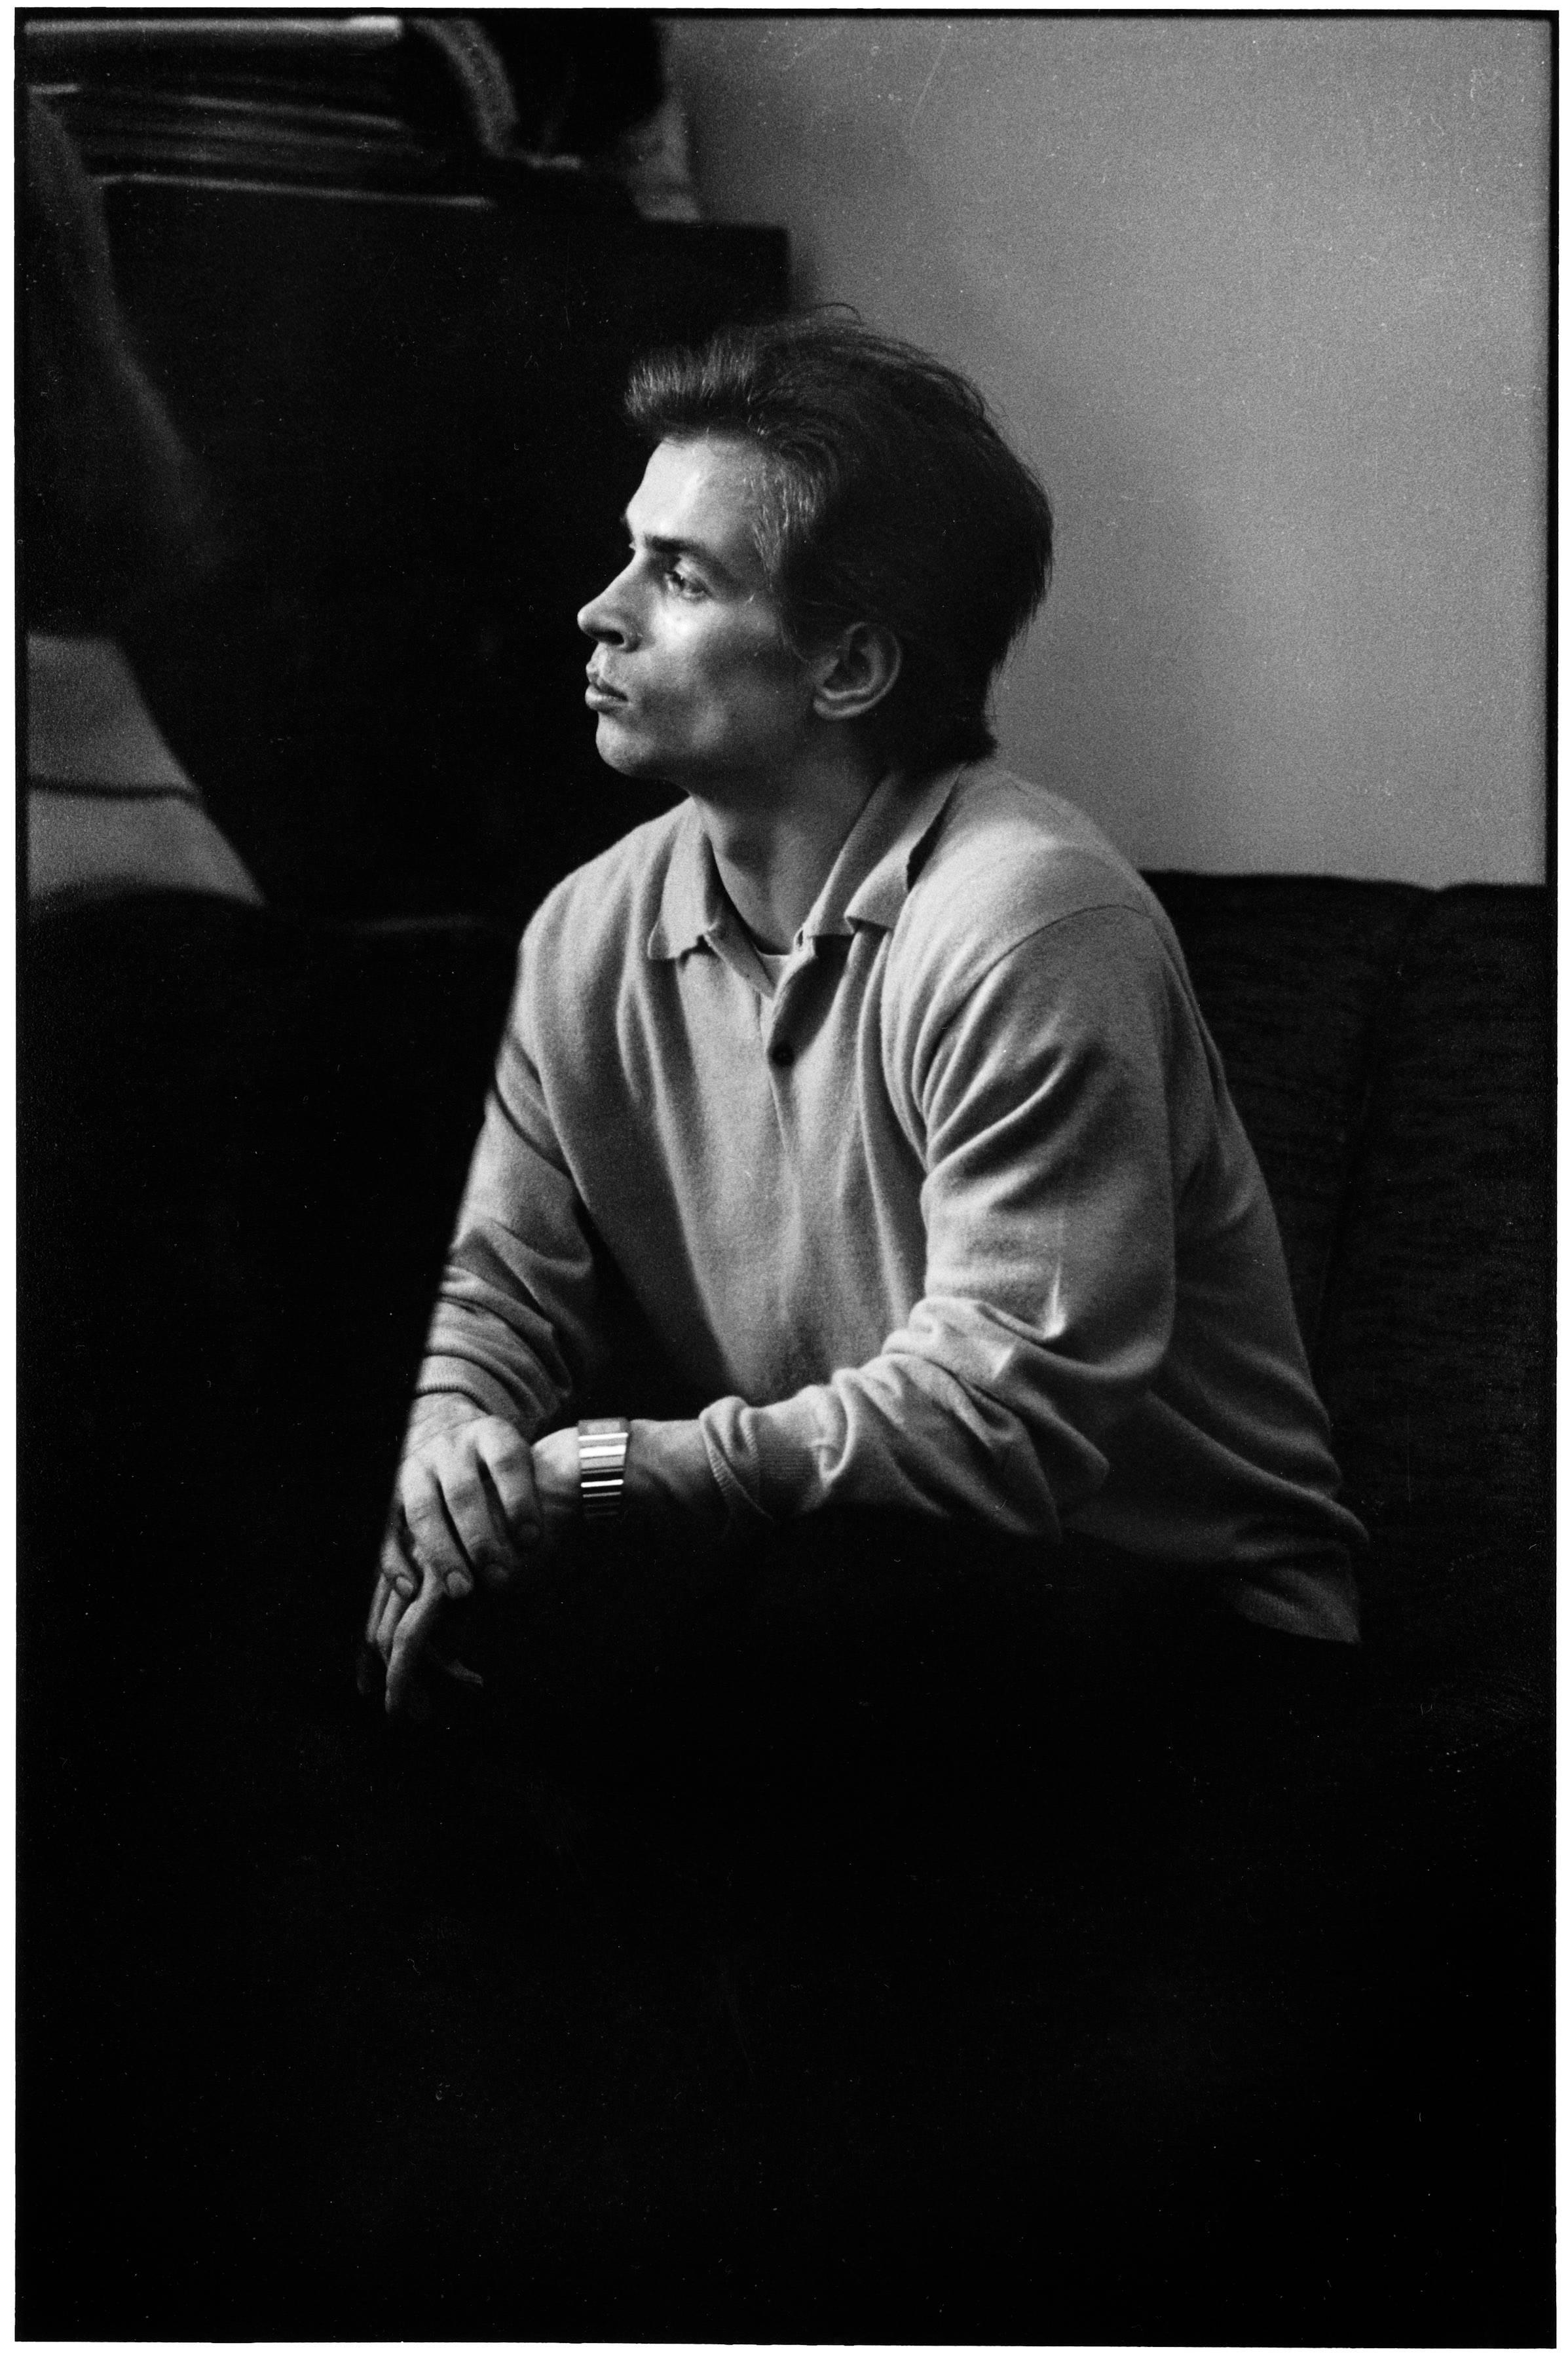 Rudolf Nureyev, New York City, 1963-Elliott Erwitt (Black and White Photography)